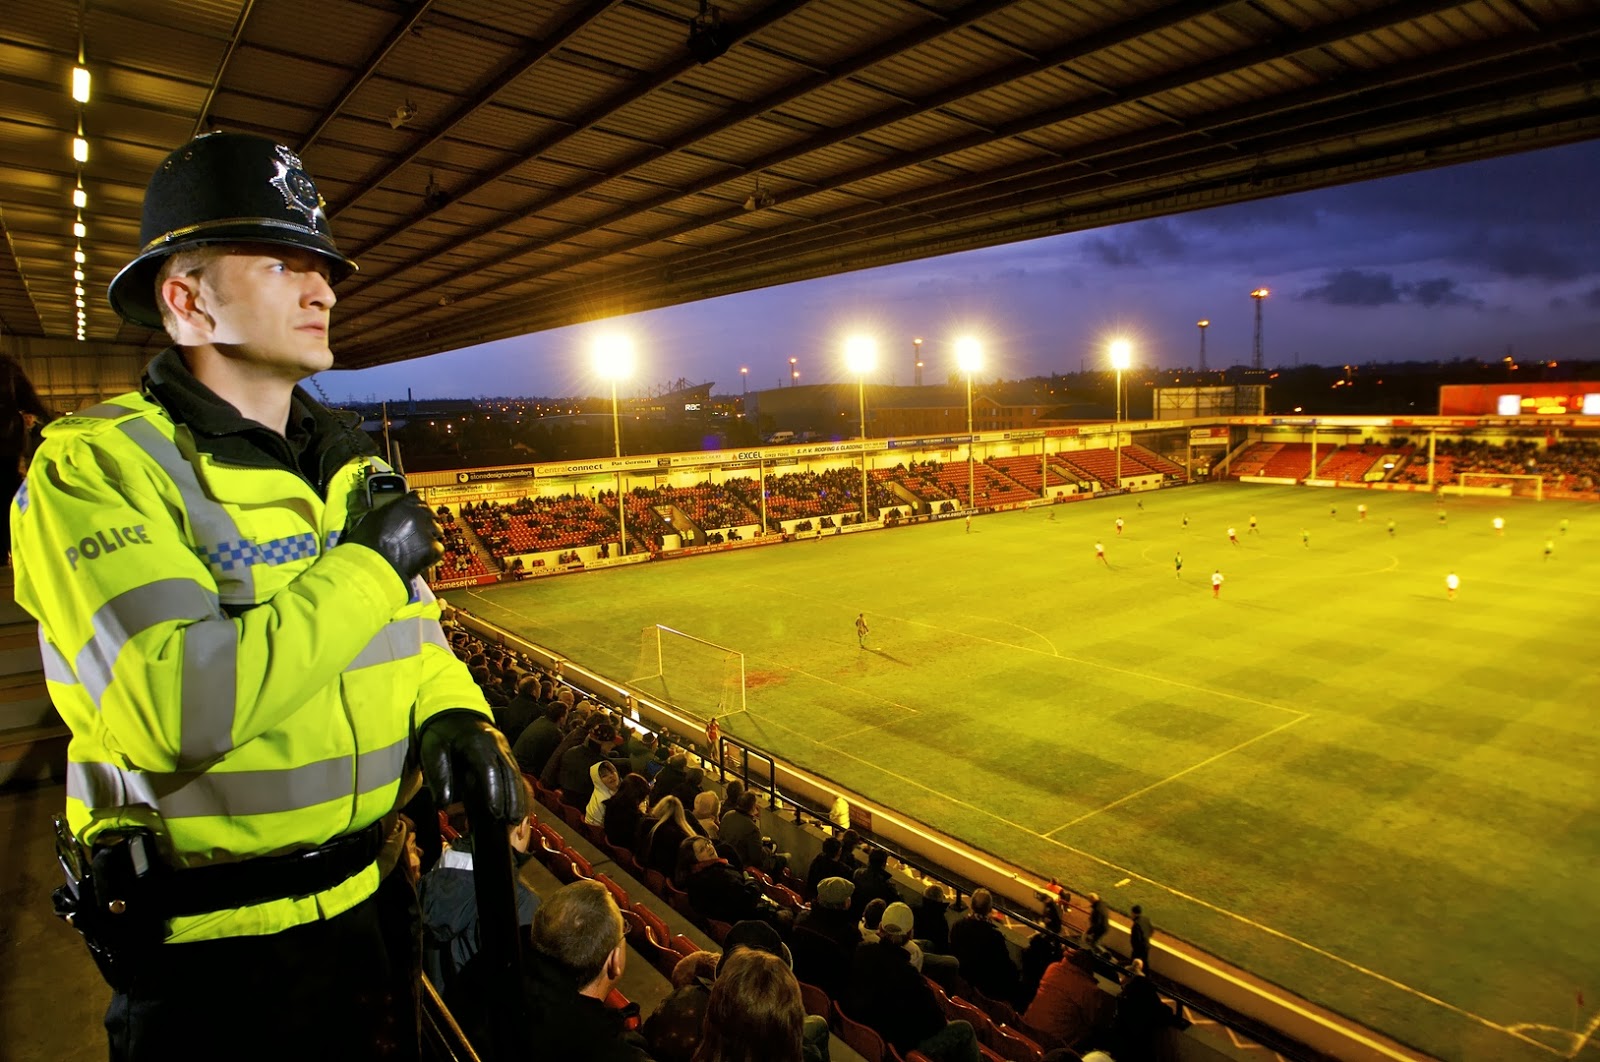 Безопасность на стадионах. Охрана на стадионе. Охрана на футболе. Полиция на футбольном стадионе. Стюарды на стадионе.